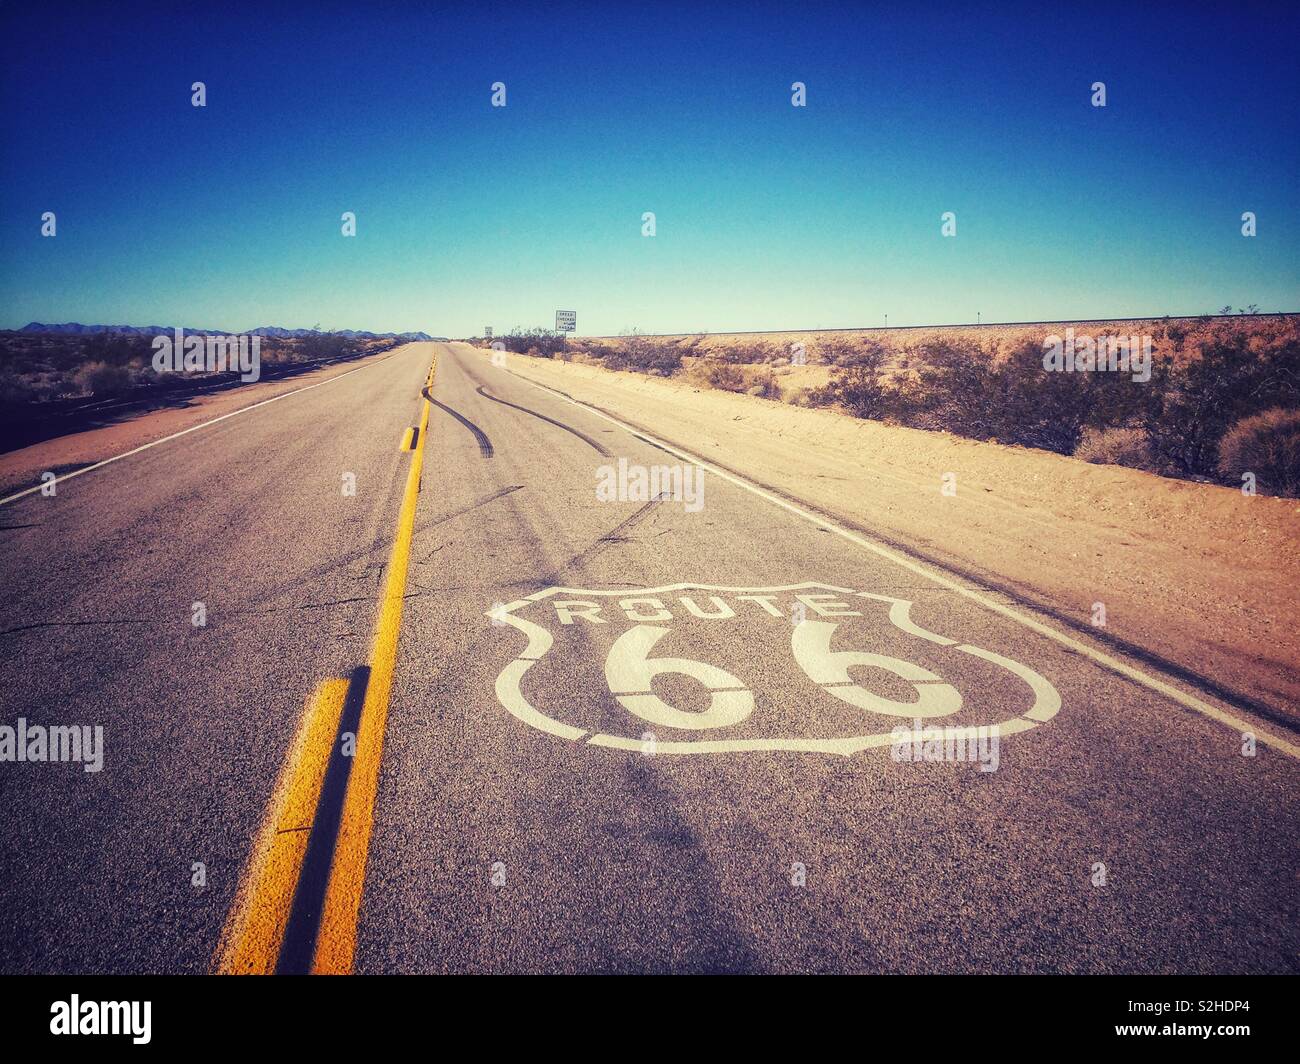 La route 66, connue sous le nom de Mother road depuis le roman de Steinbeck Les raisins de la colère. Banque D'Images